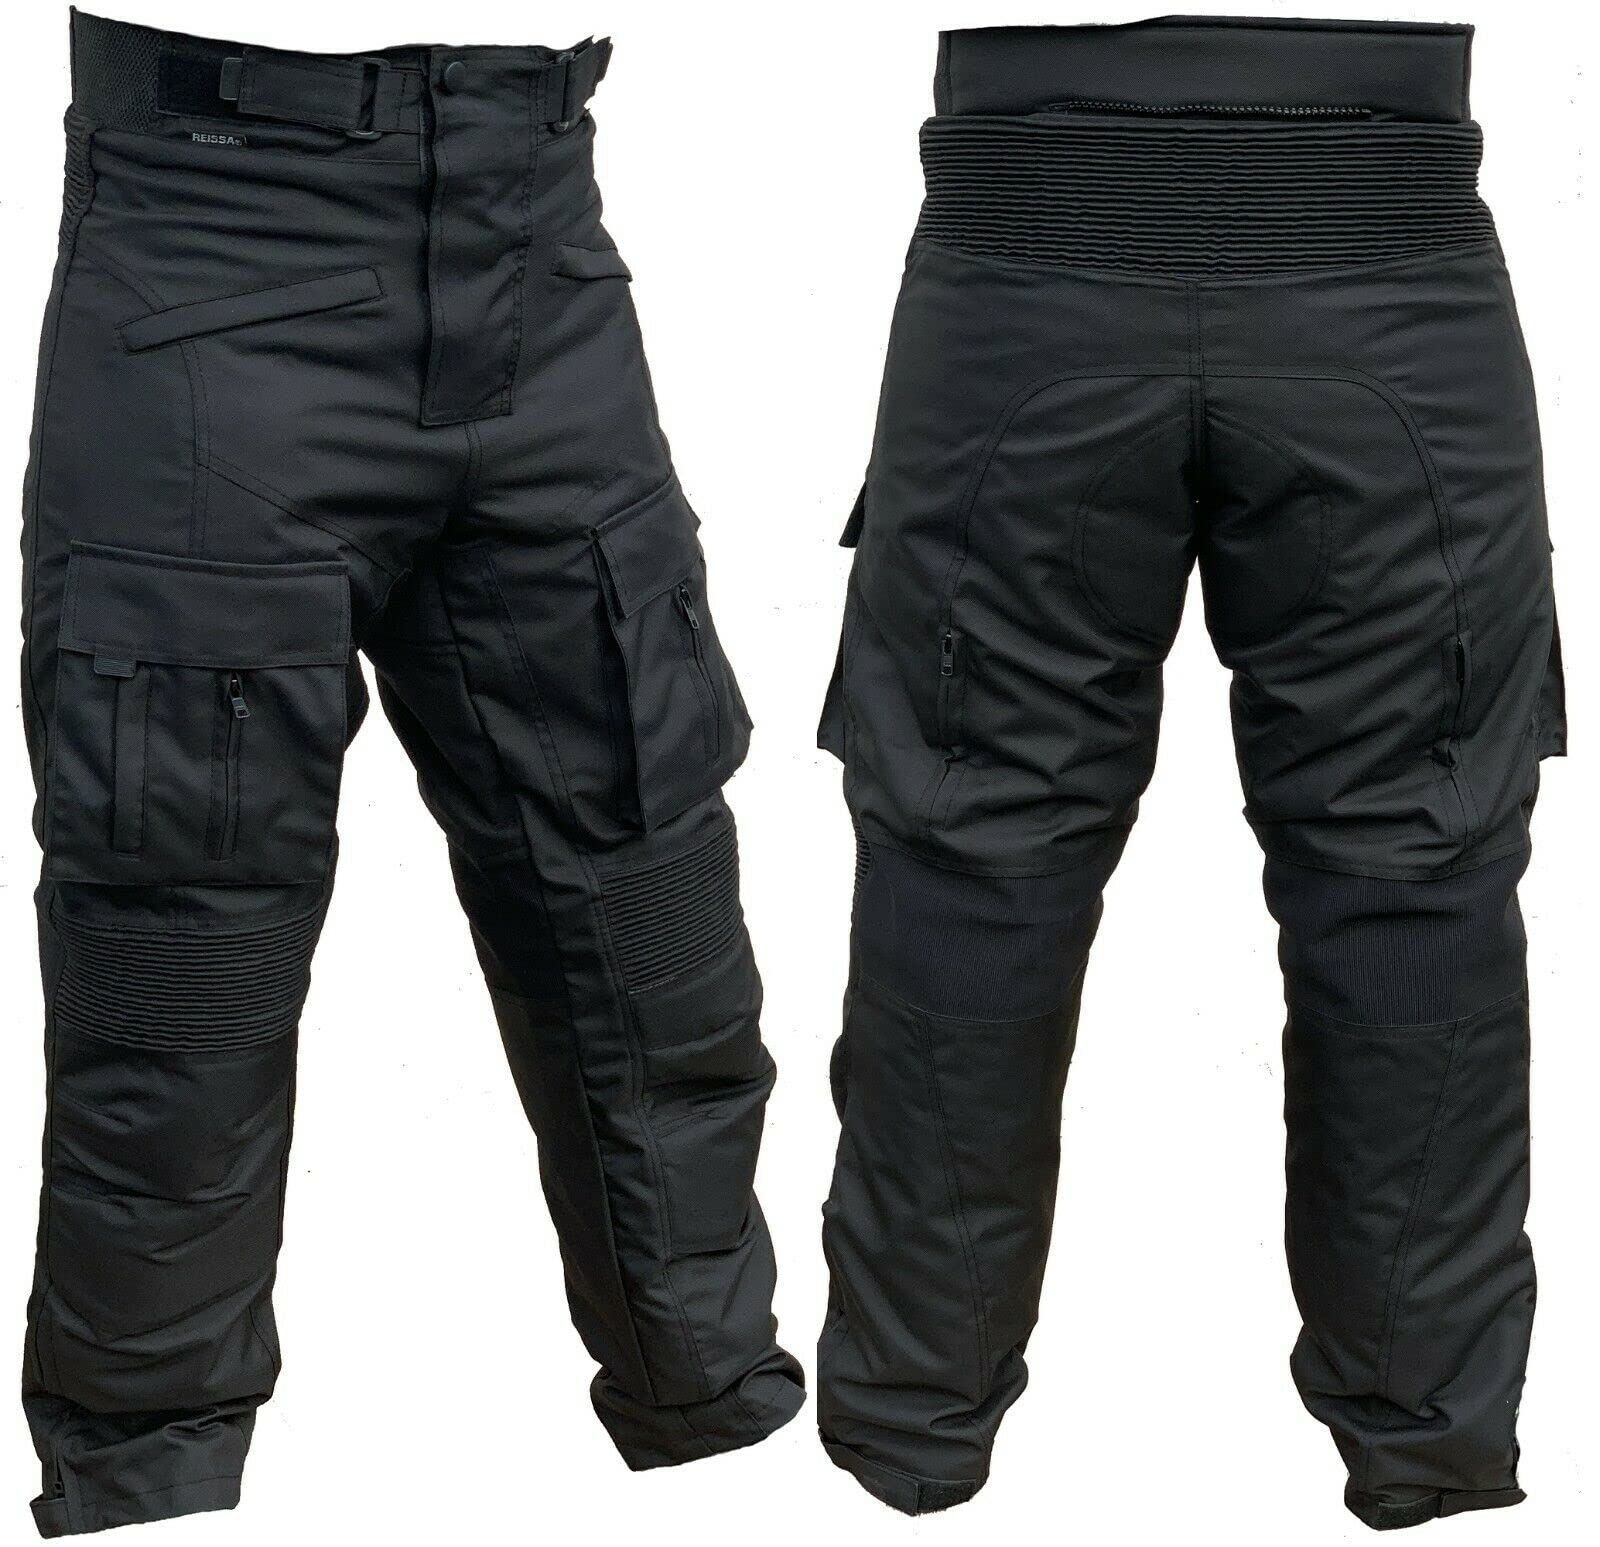 Motorradhose mit herausnehmbaren Protektoren an Hüfte und Knie Herren Textil Motorrad Hose (L) von L&J